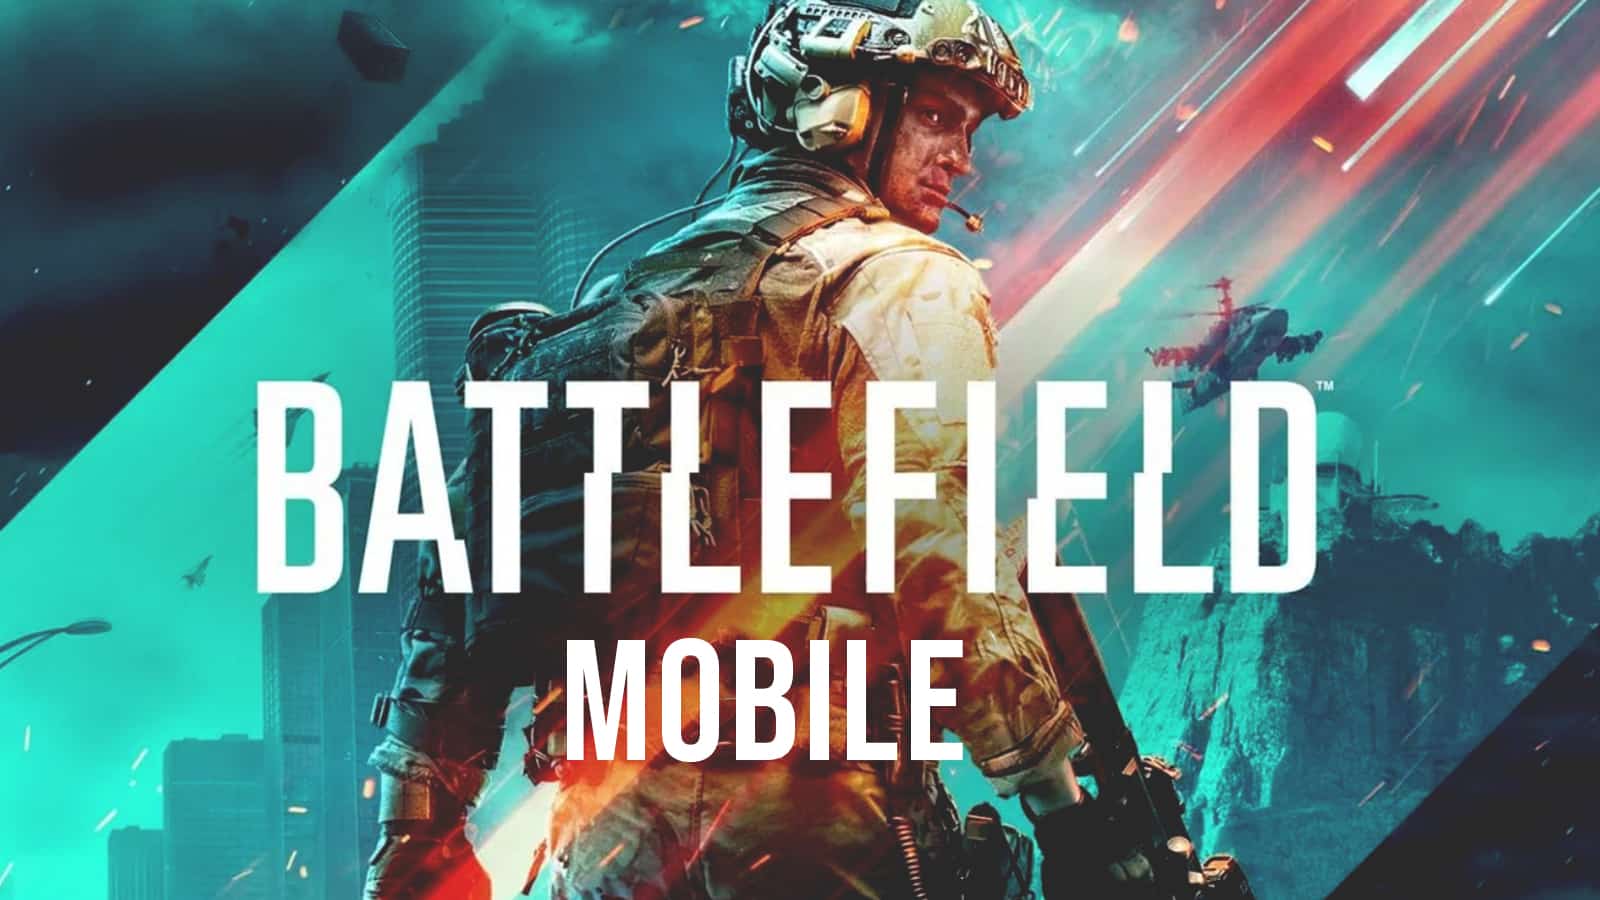 Mobile battlefield Battlefield Mobile